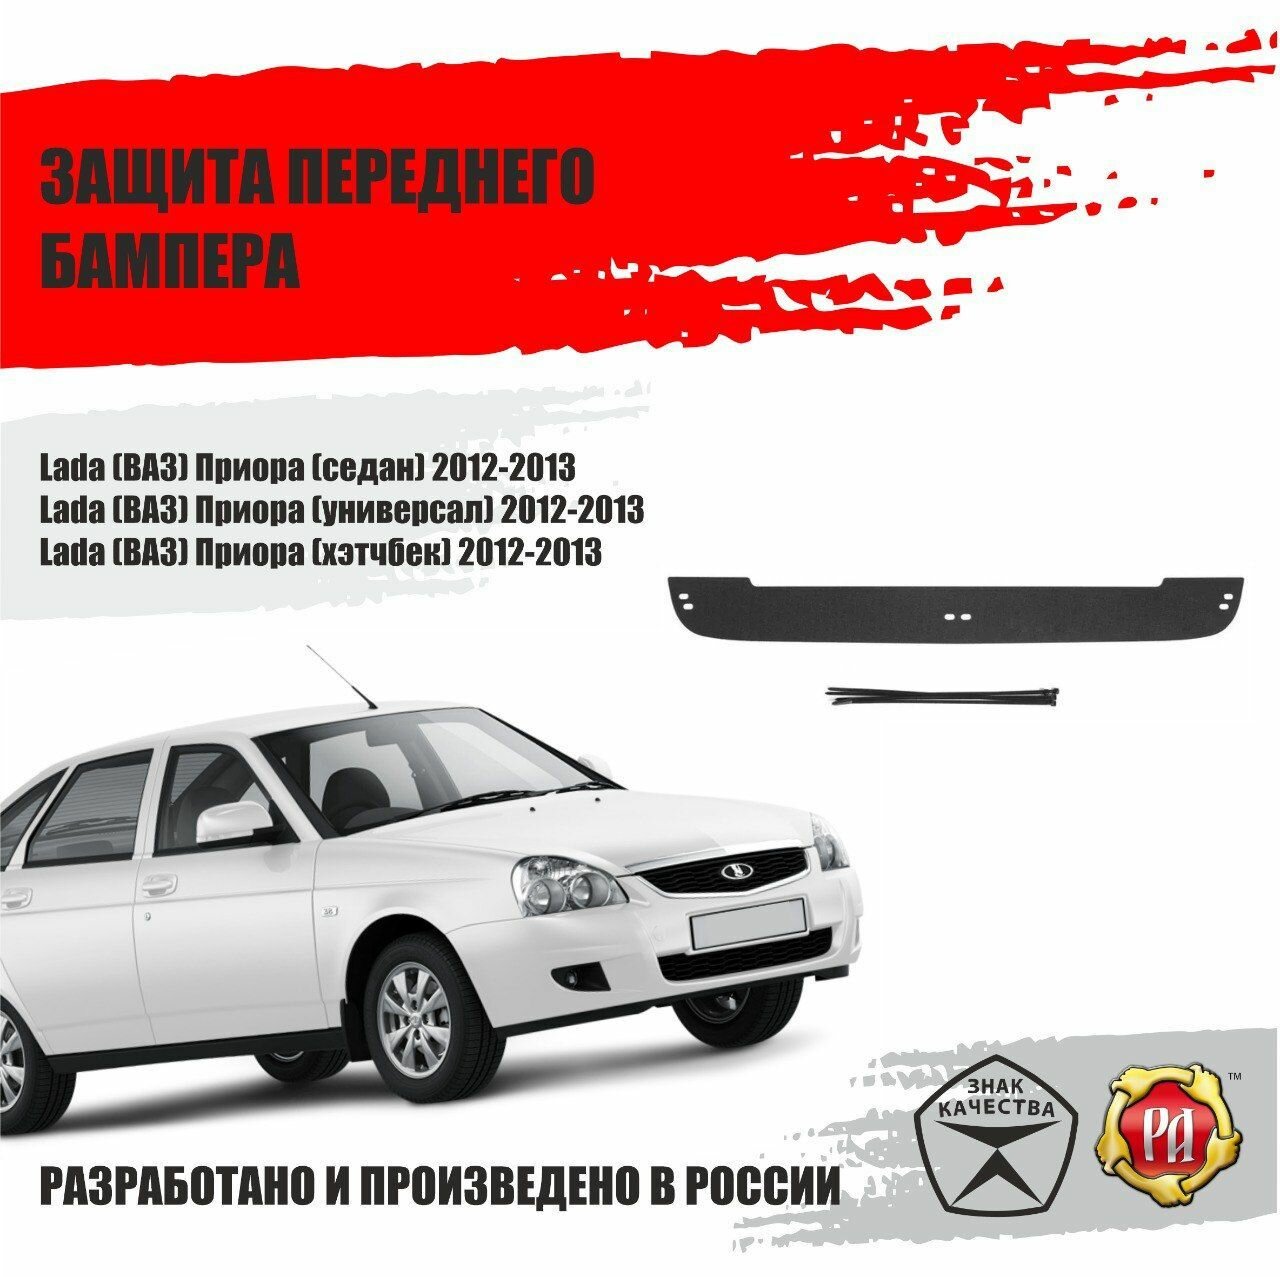 Защитаная сетка и зимняя заглушка в бампер для Lada Priora 2012-2013